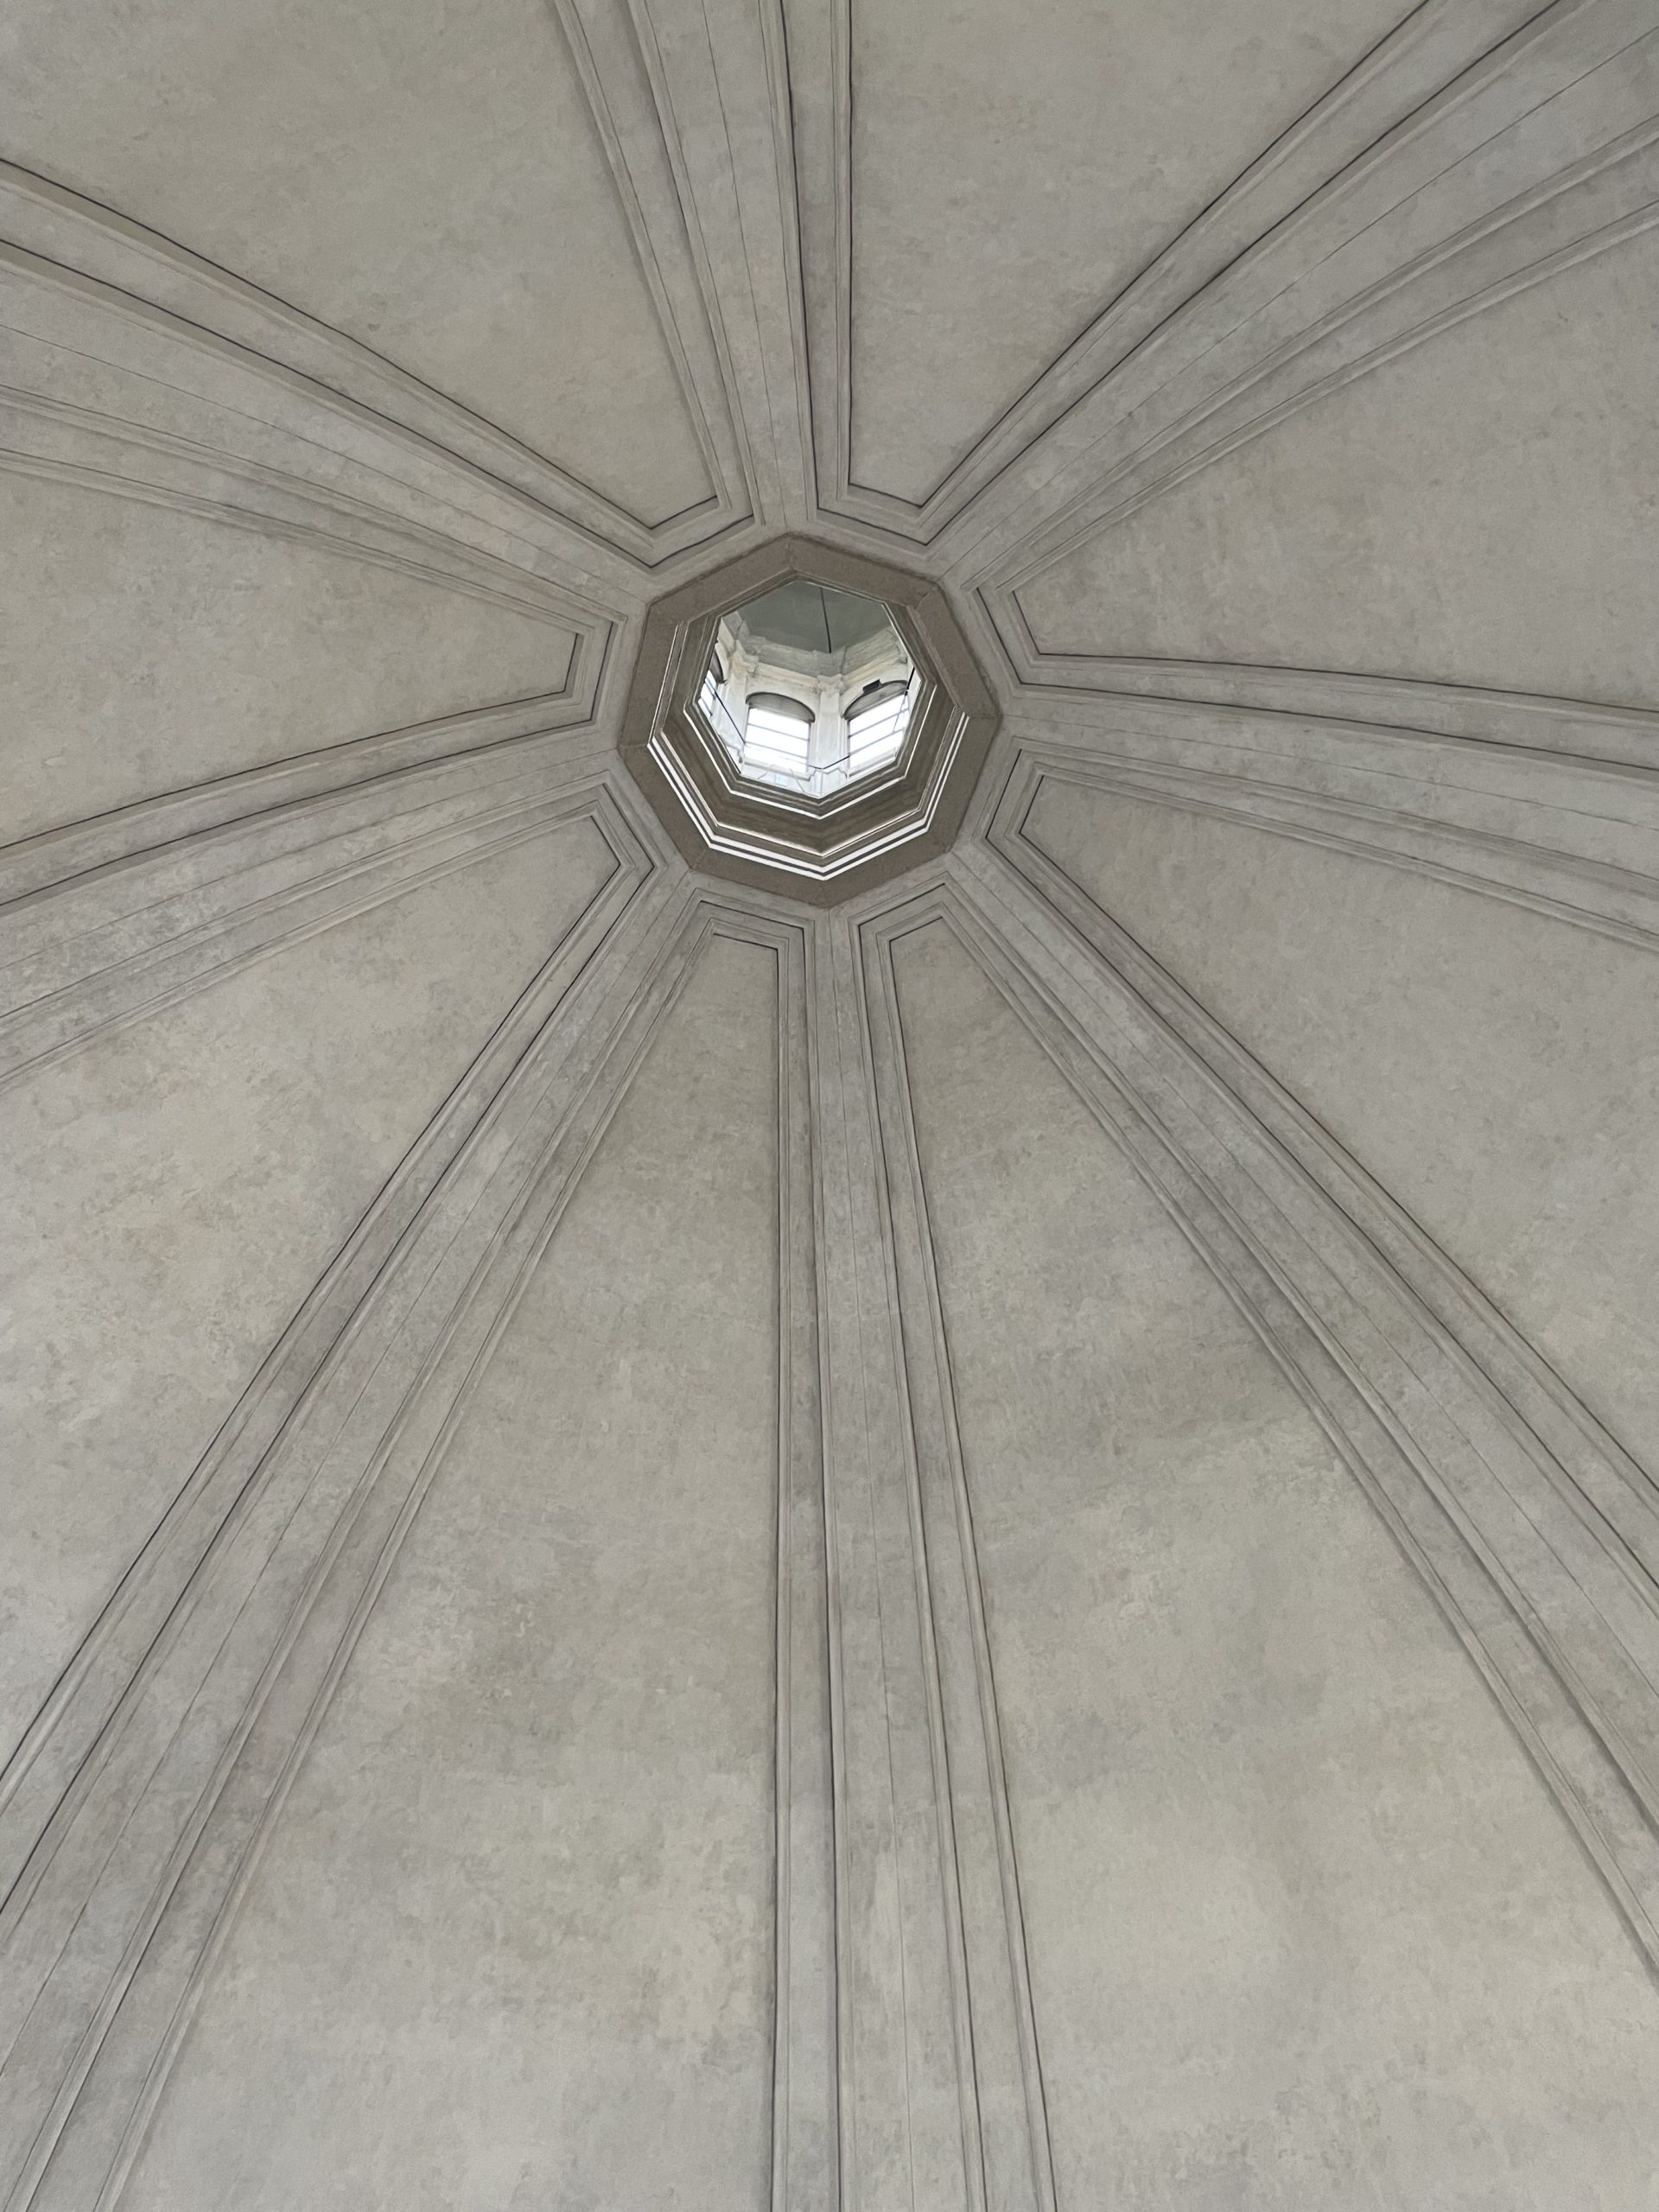 Basilica di San Lorenzo Maggiore – La cupola restaurata – 1 aprile 2022